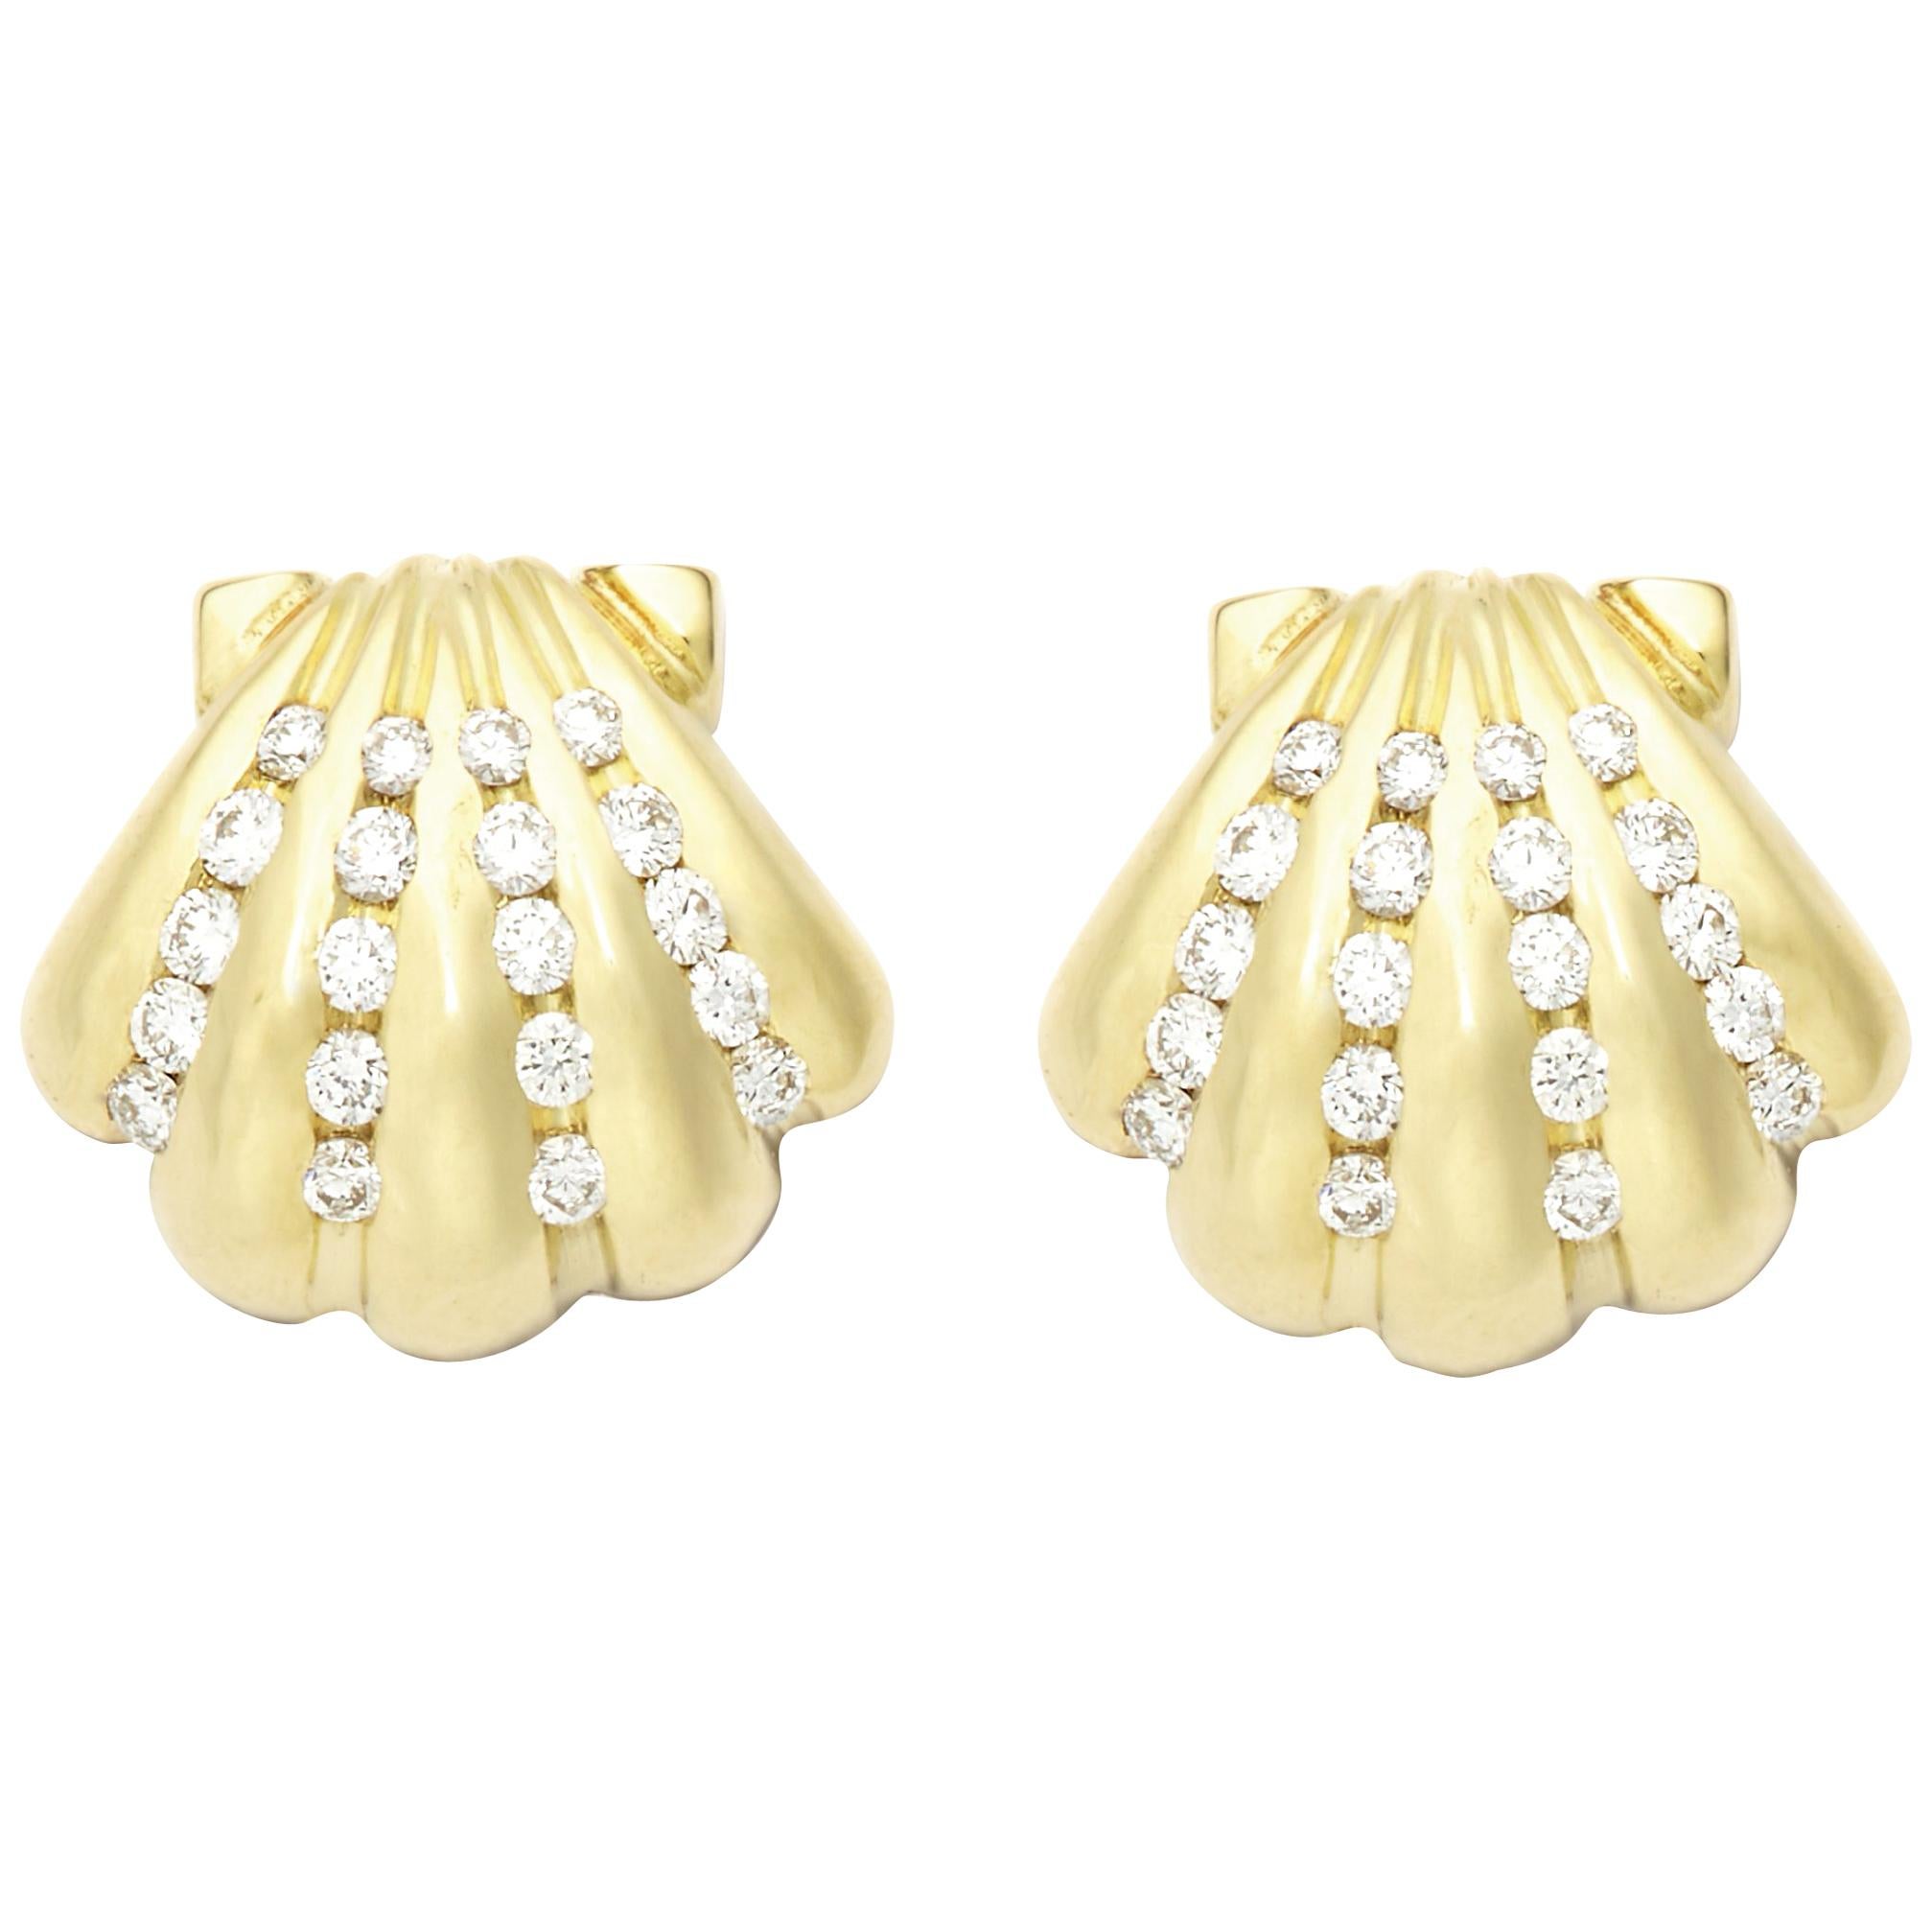 Susan Lister Locke 0.56 Carat Diamond Scallop Shell Earrings in 18 Karat Gold For Sale